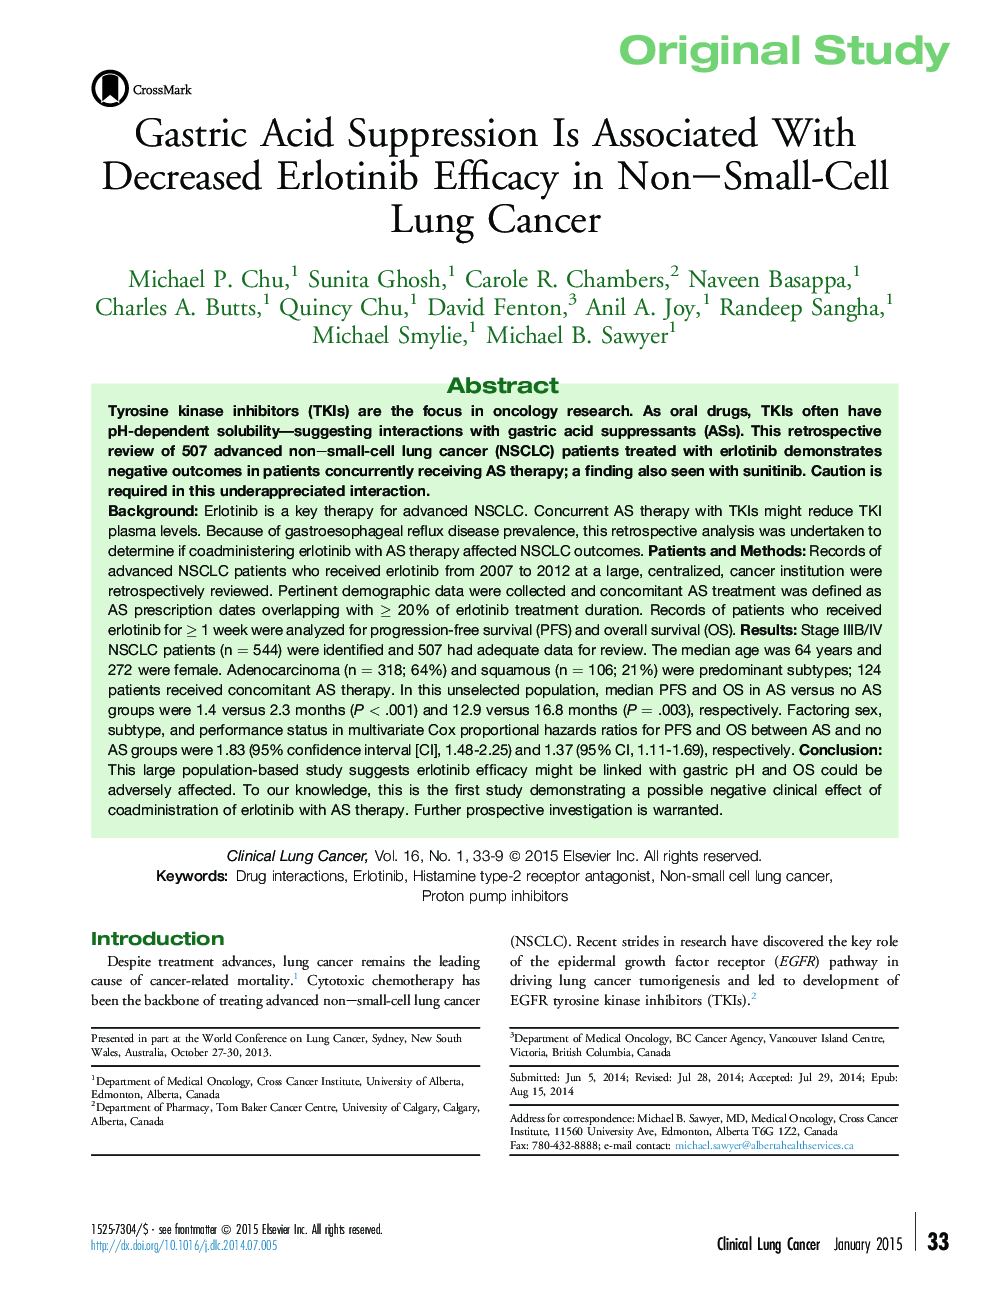 سرکوب اسید معده با کاهش کارآیی ارلتینیب در سرطان ریه سلول های کوچک نونا ارتباط دارد 